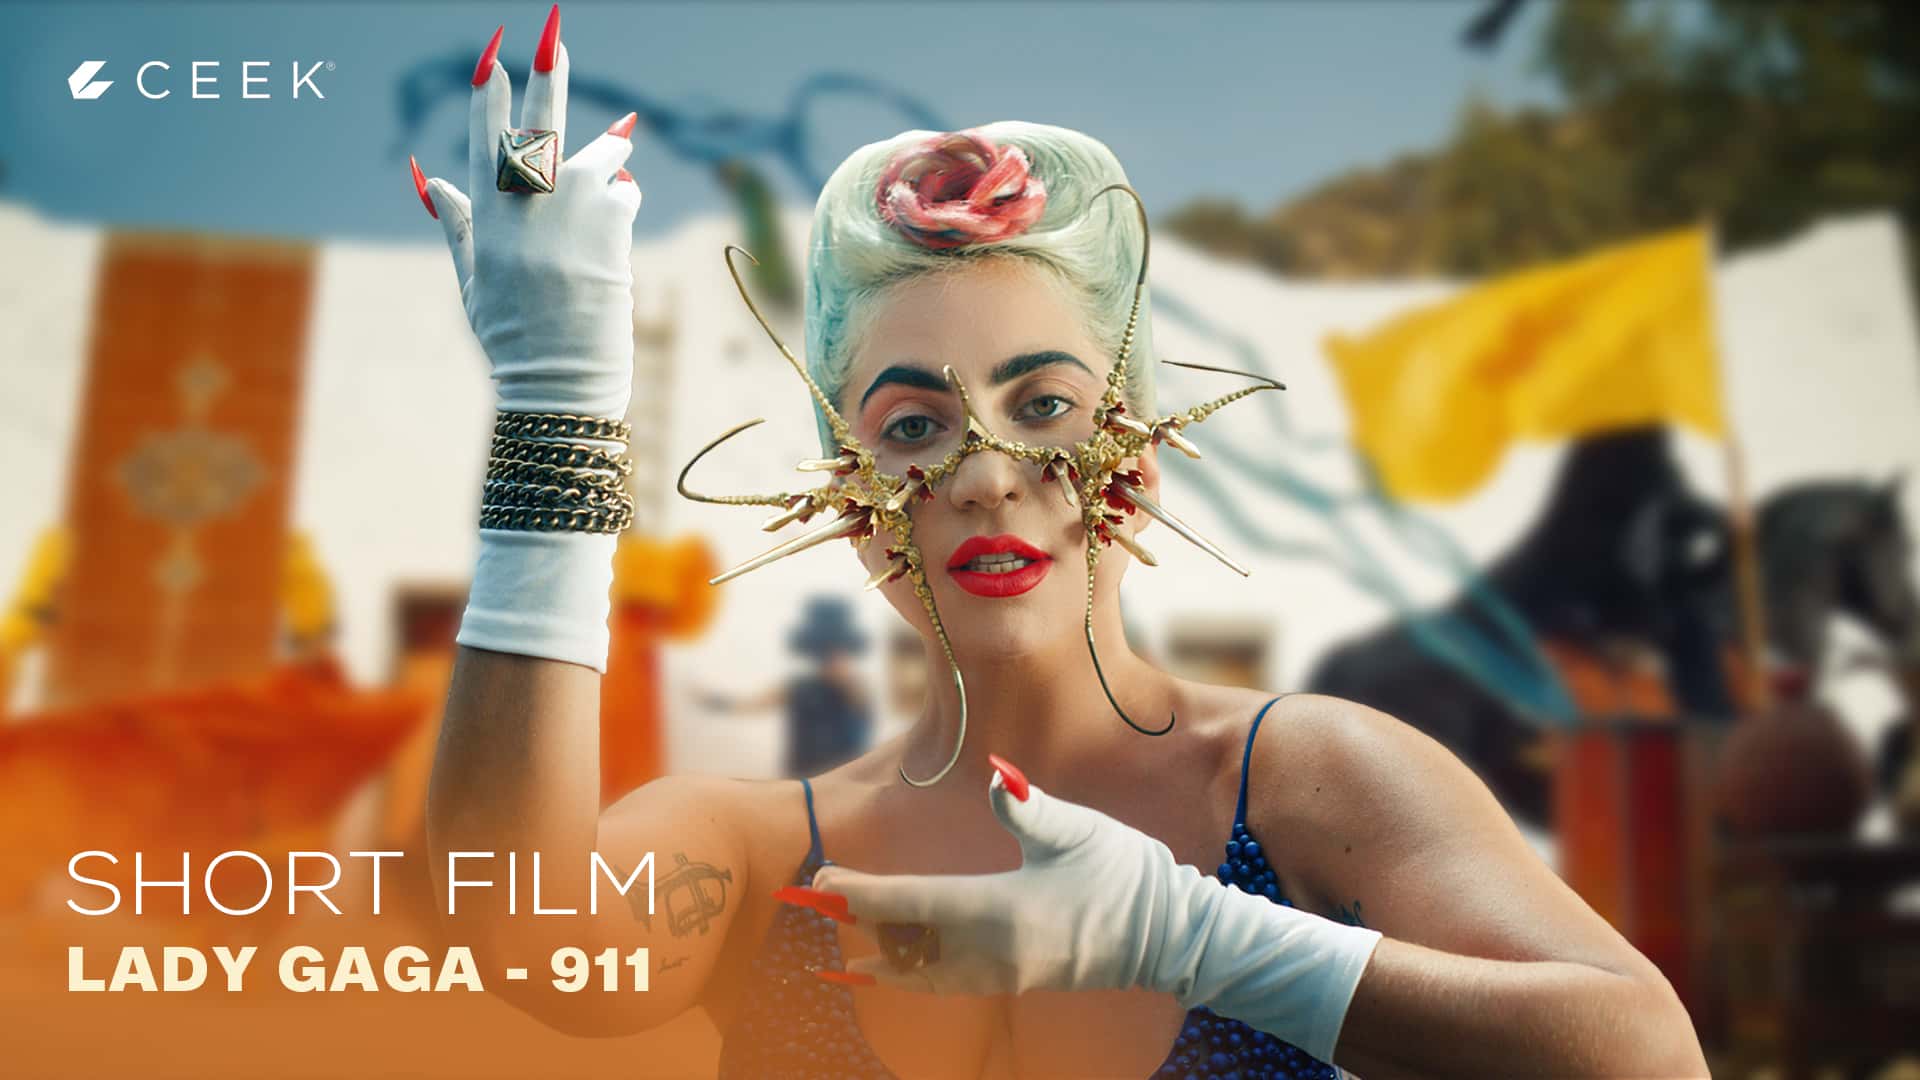 Lady Gaga Short Film - Lady Gaga  911